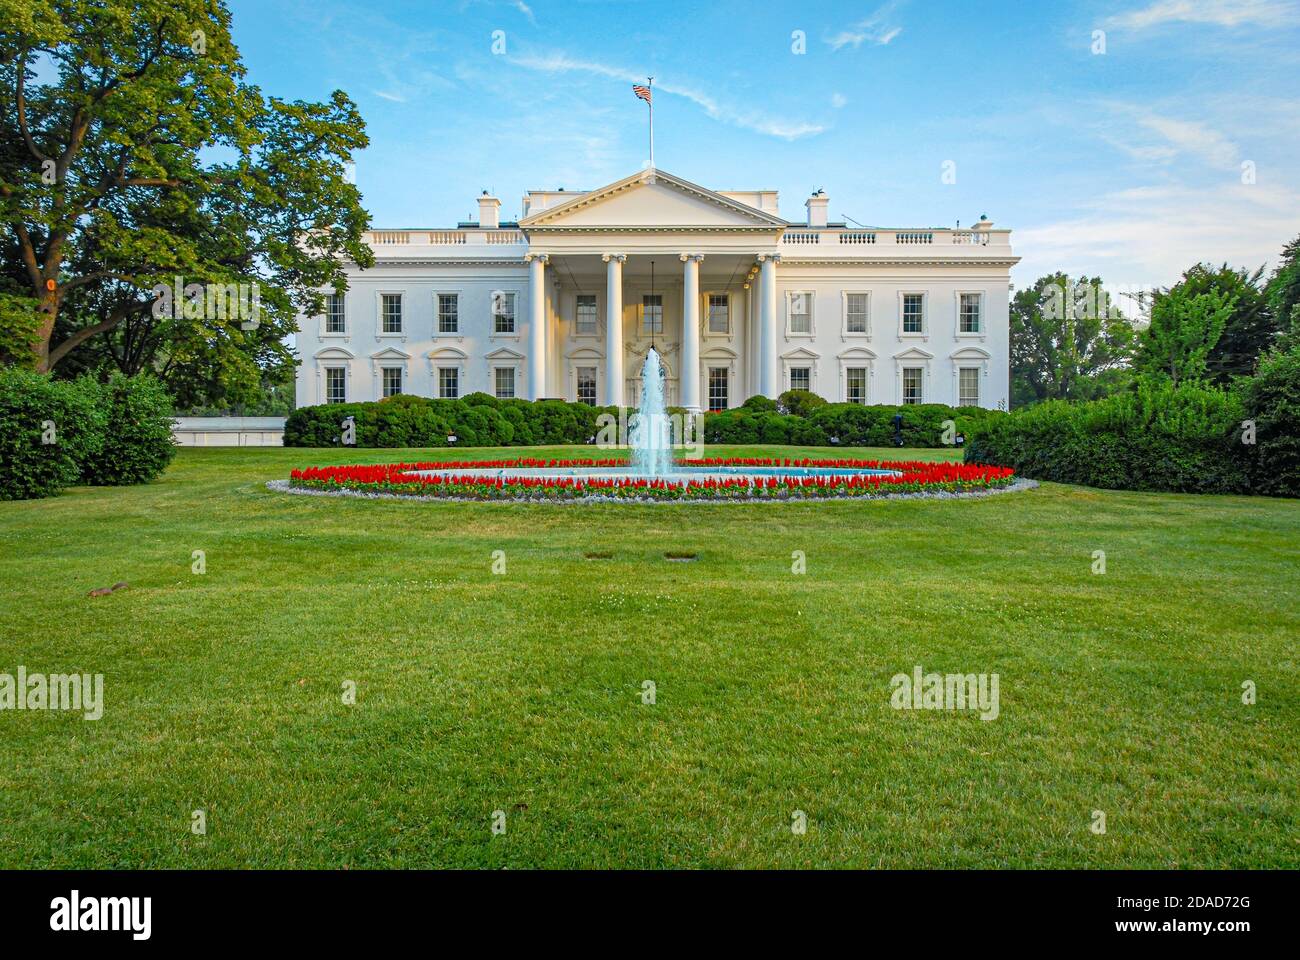 Das Weiße Haus, North Lawn, Washington, D.C. (USA) Stockfoto